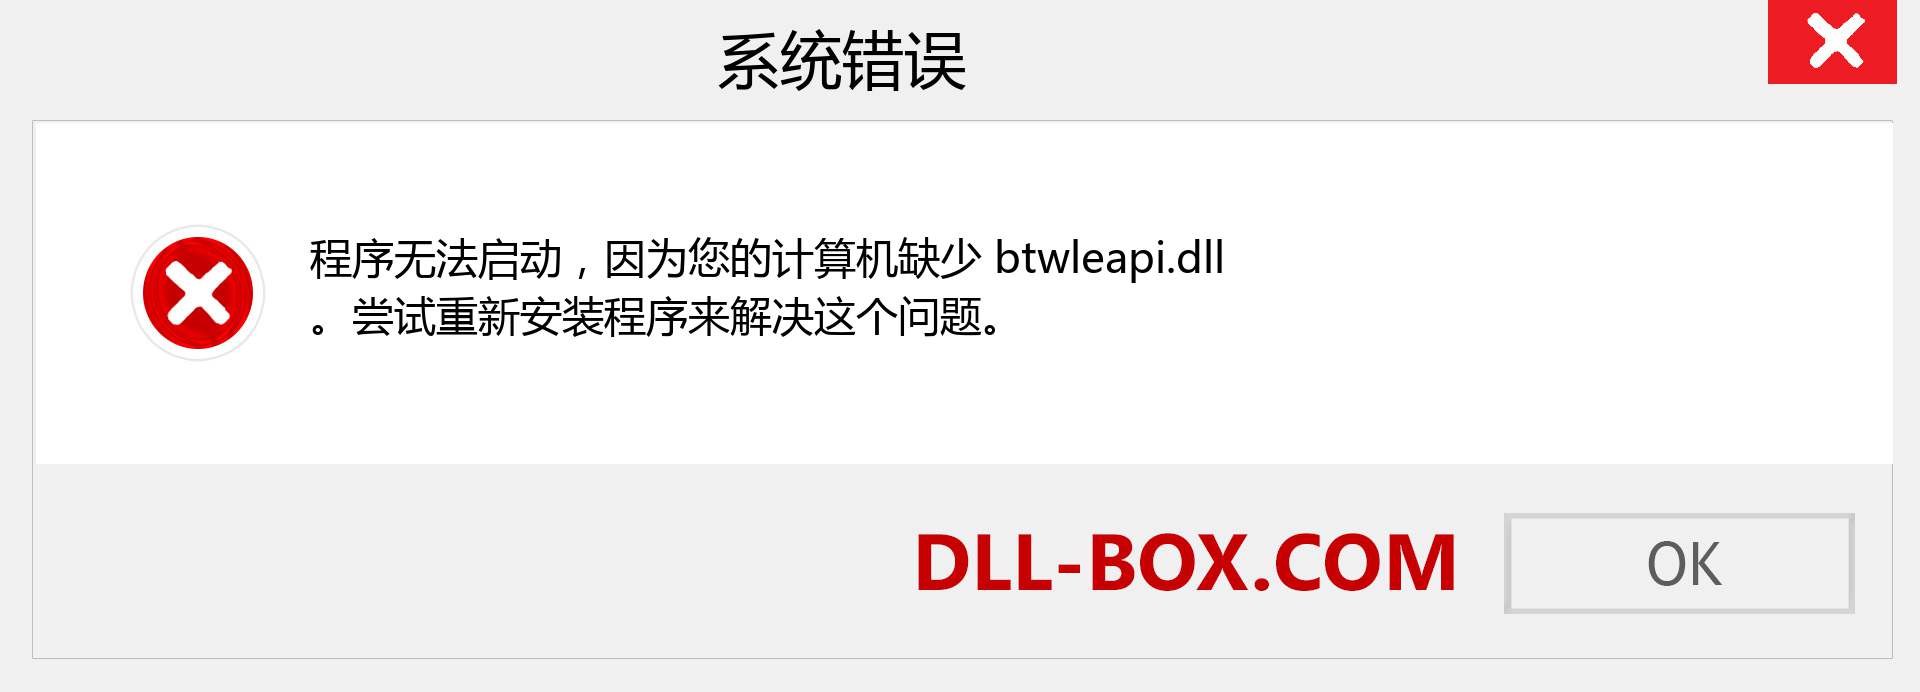 btwleapi.dll 文件丢失？。 适用于 Windows 7、8、10 的下载 - 修复 Windows、照片、图像上的 btwleapi dll 丢失错误